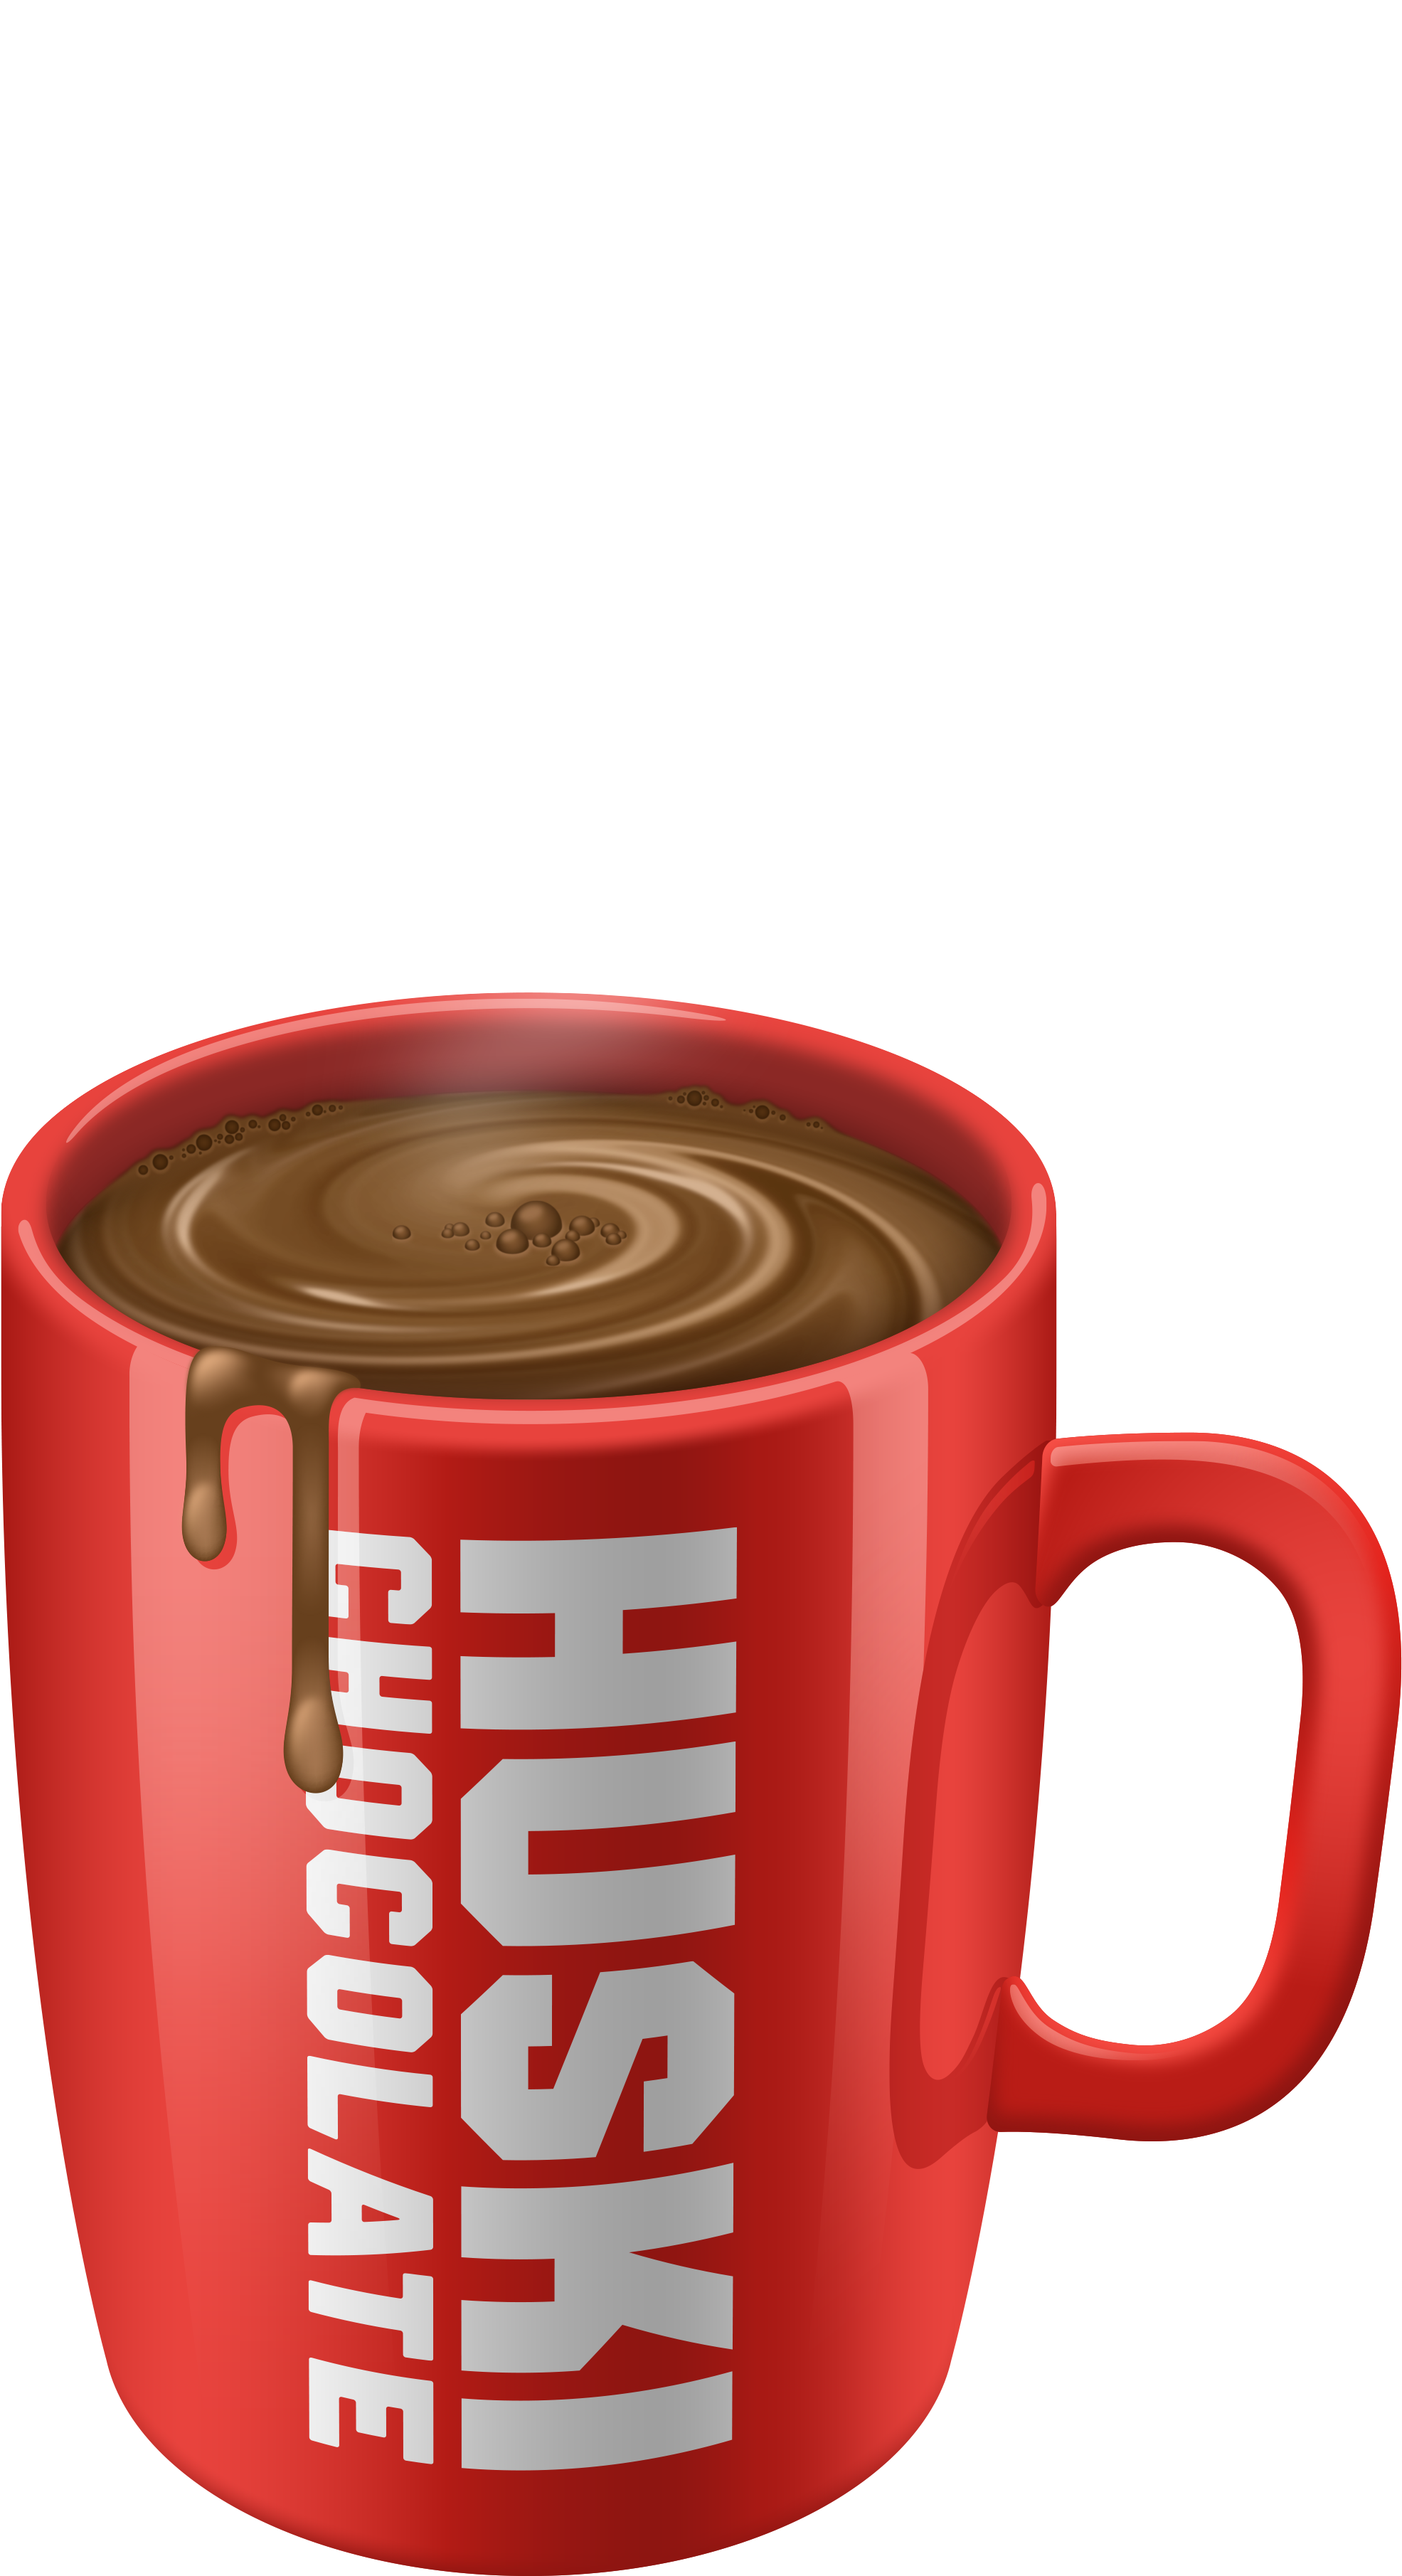 Kaffee-Schokoladen-Cup-PNG-Datei